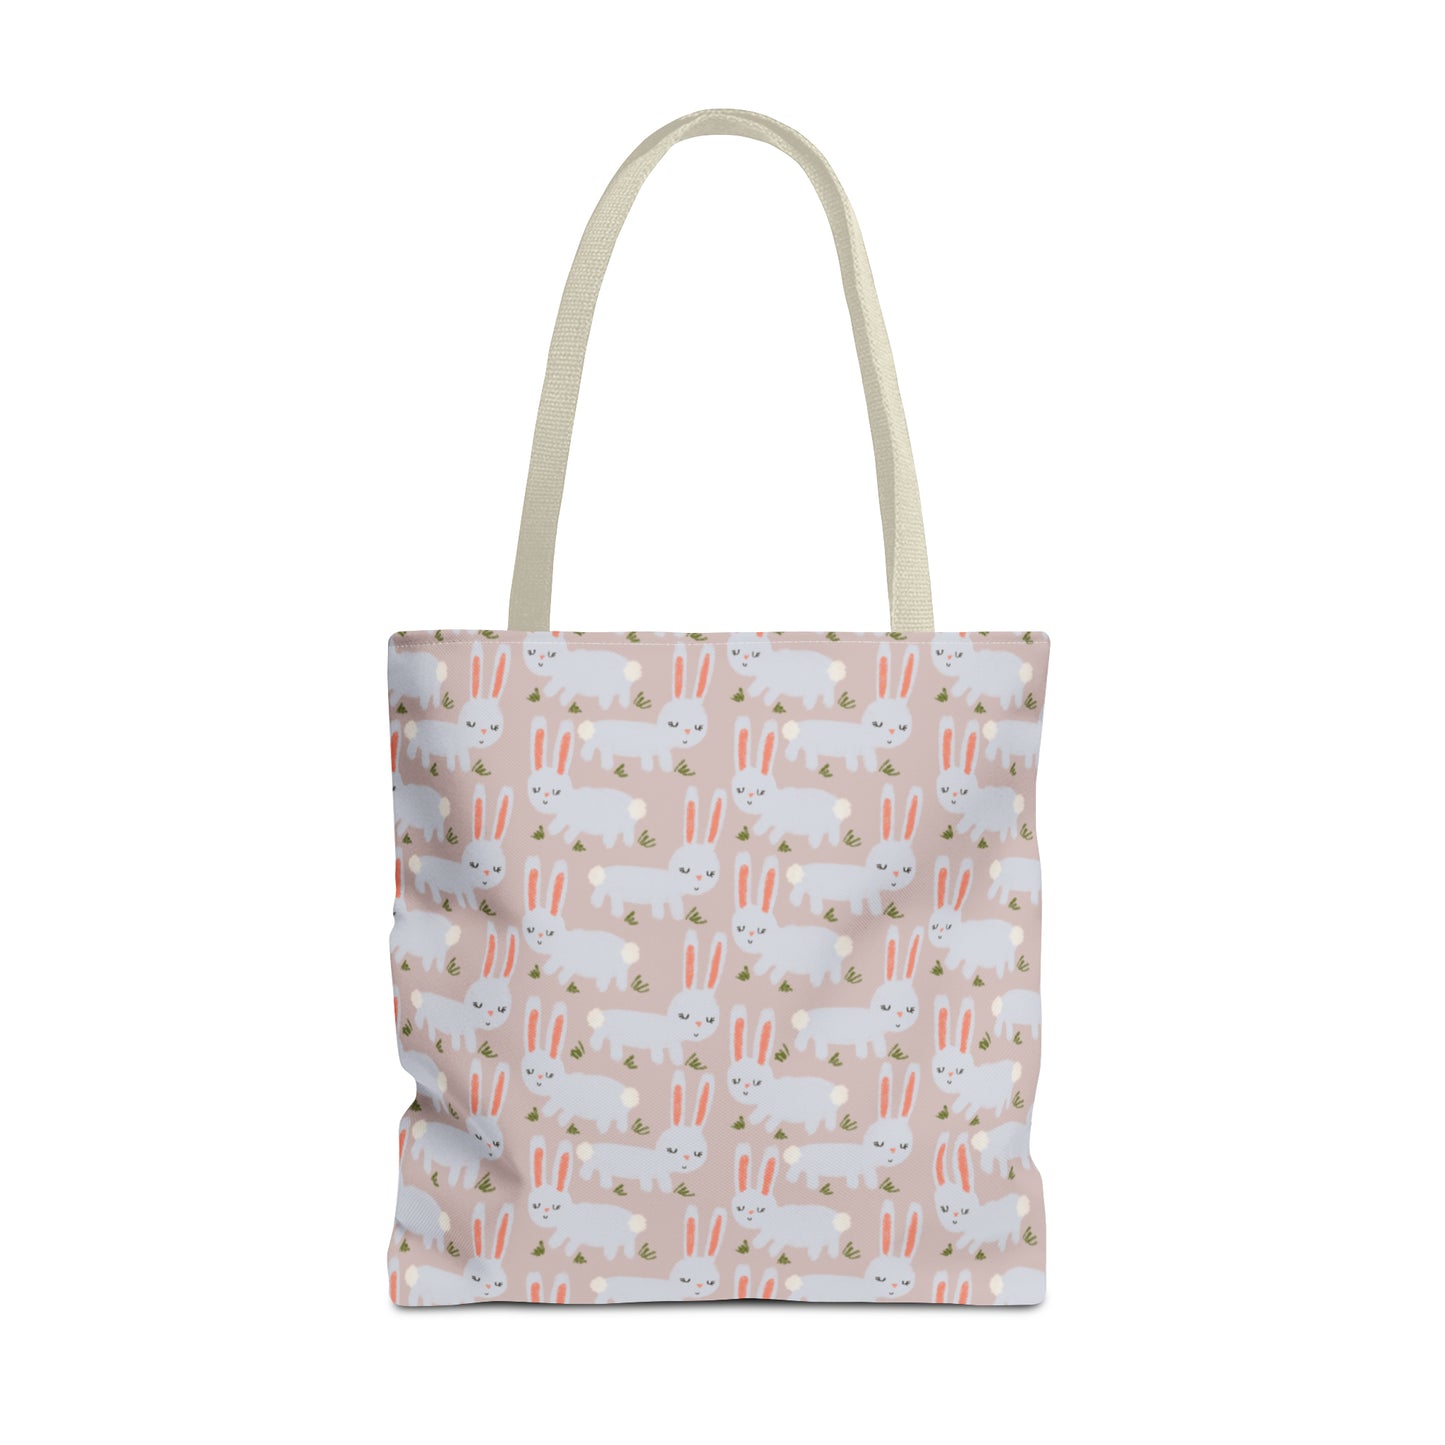 Cute Bunnies on Pink Tote Bag